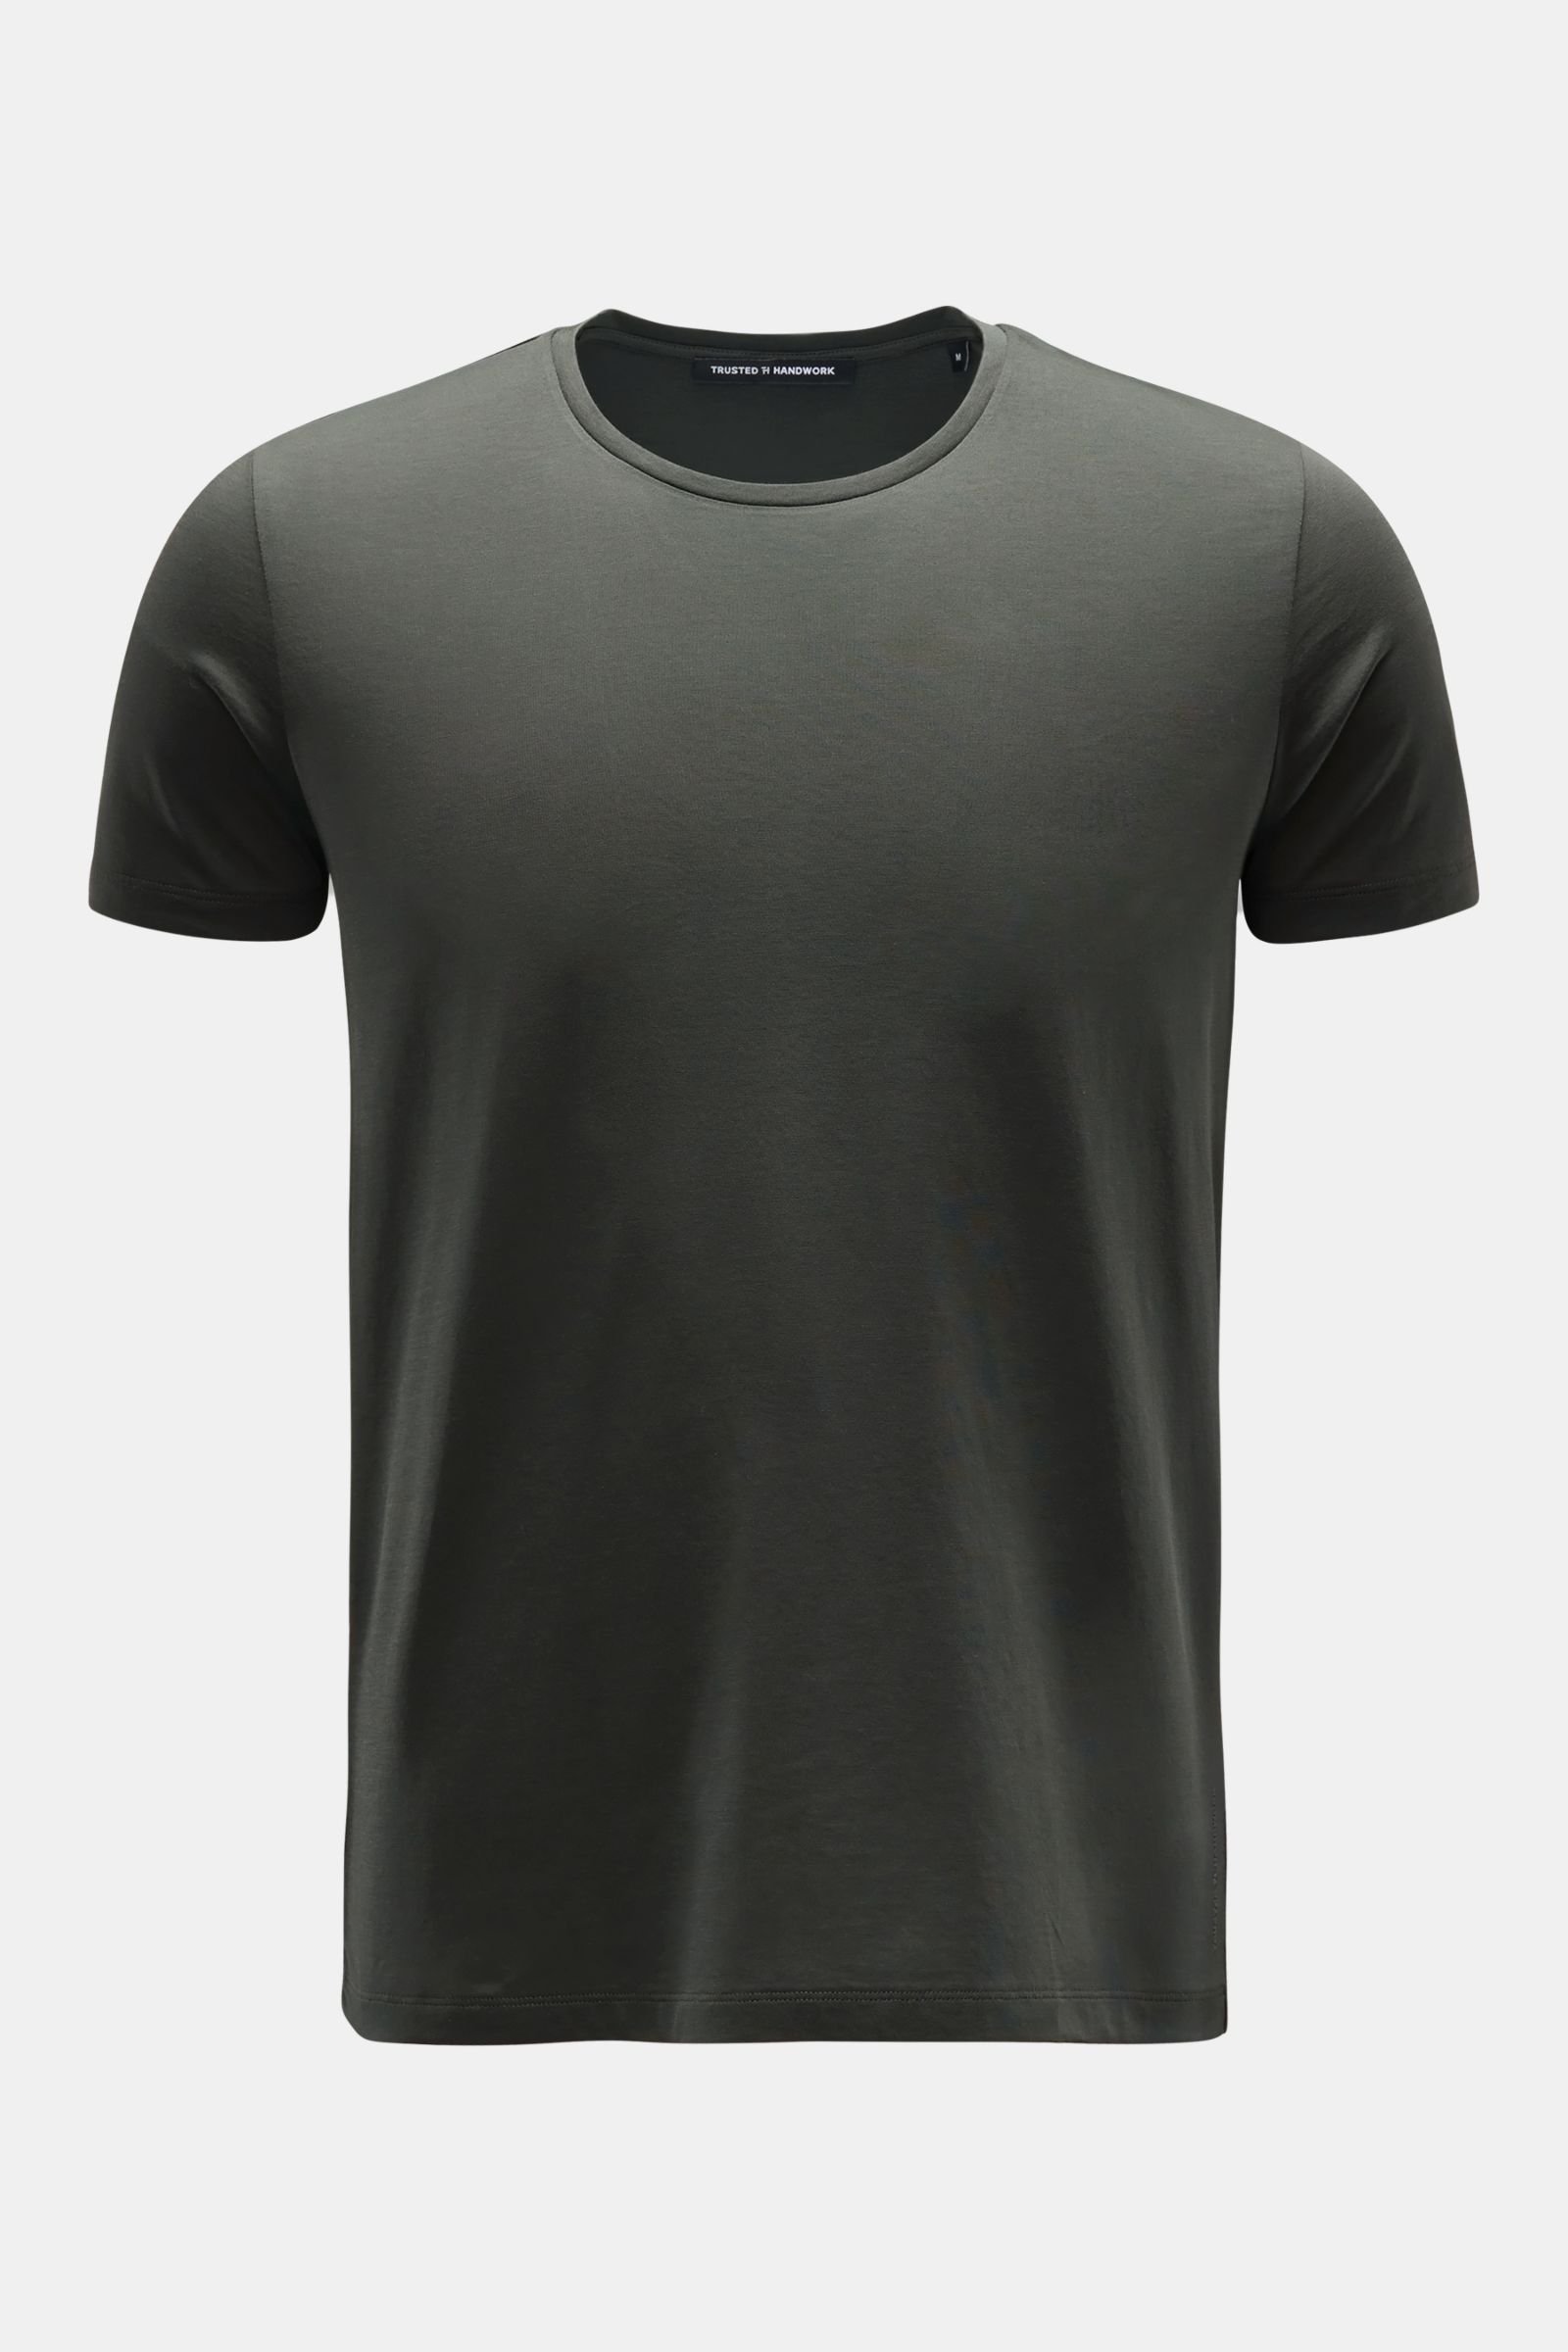 Crew neck T-shirt dark olive 